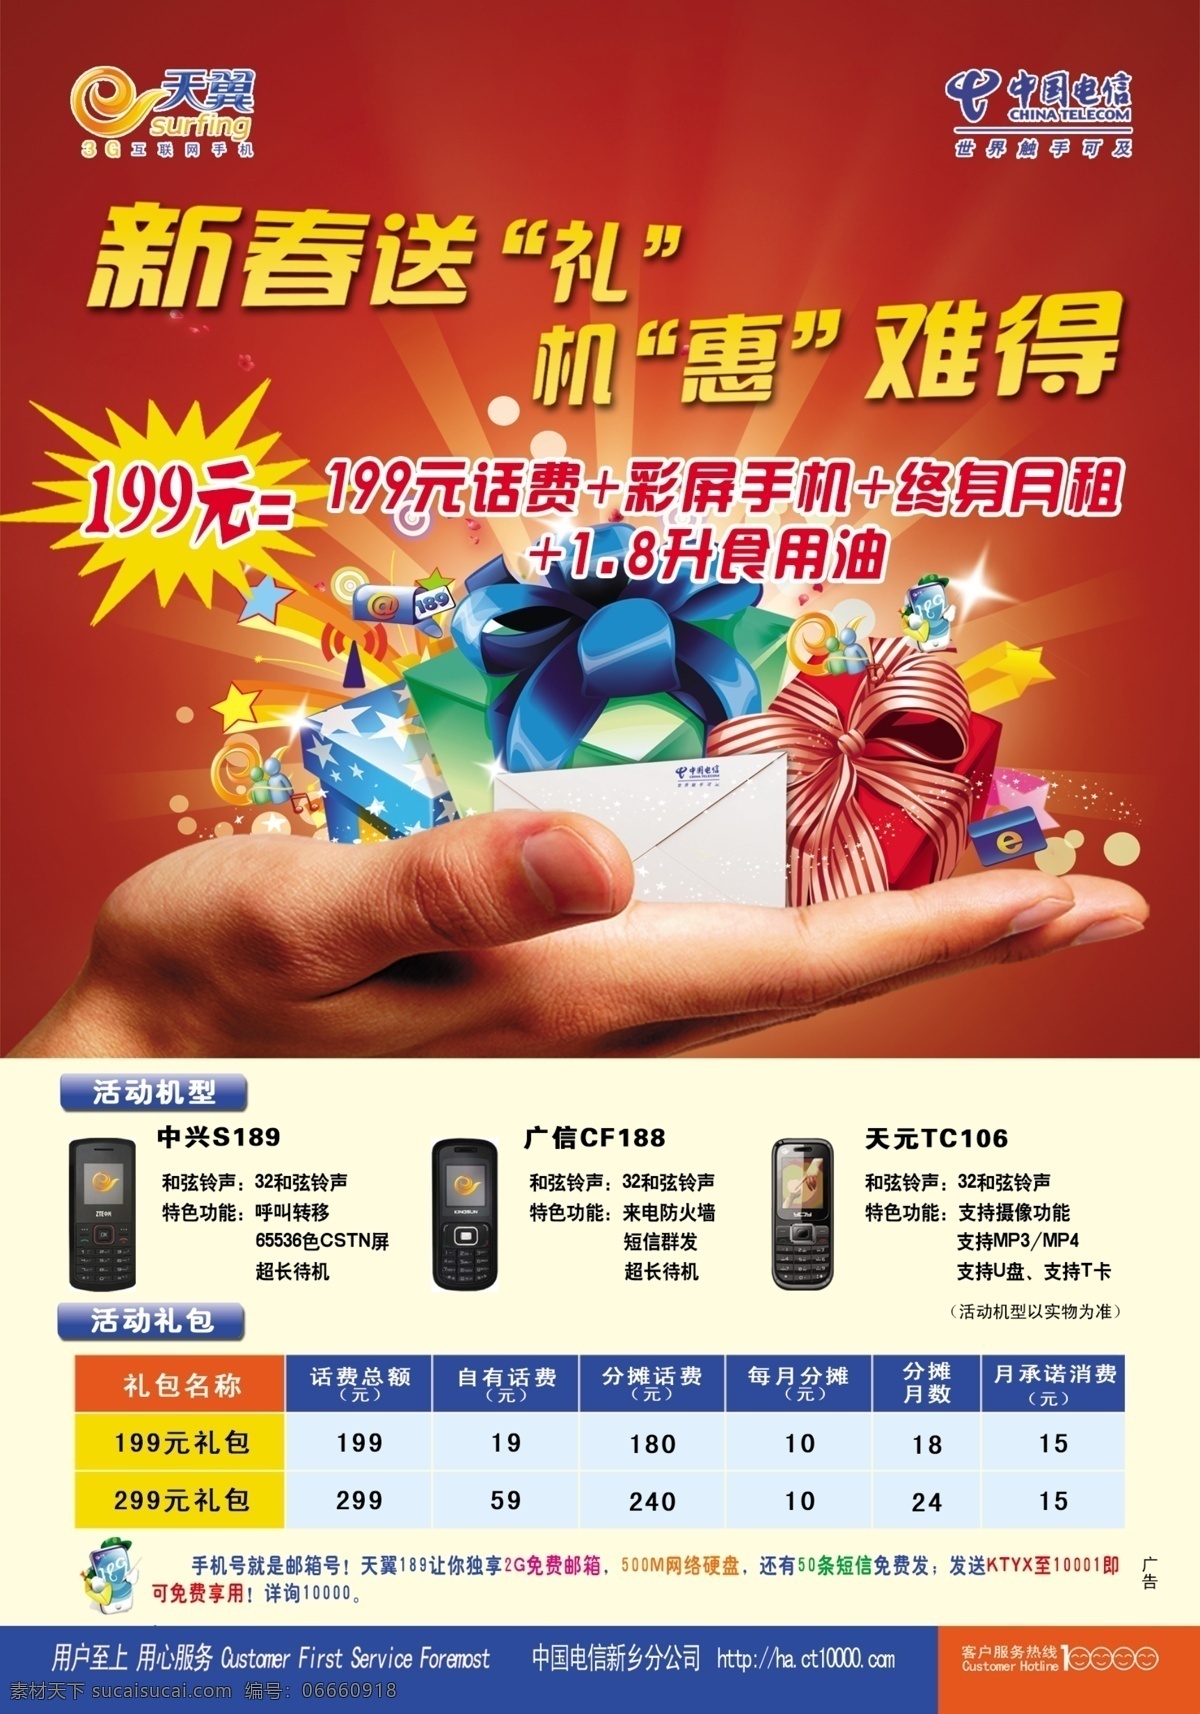 天翼新春送礼 手 礼品包 手机模型 中国电信 天翼标 dm宣传单 广告设计模板 源文件